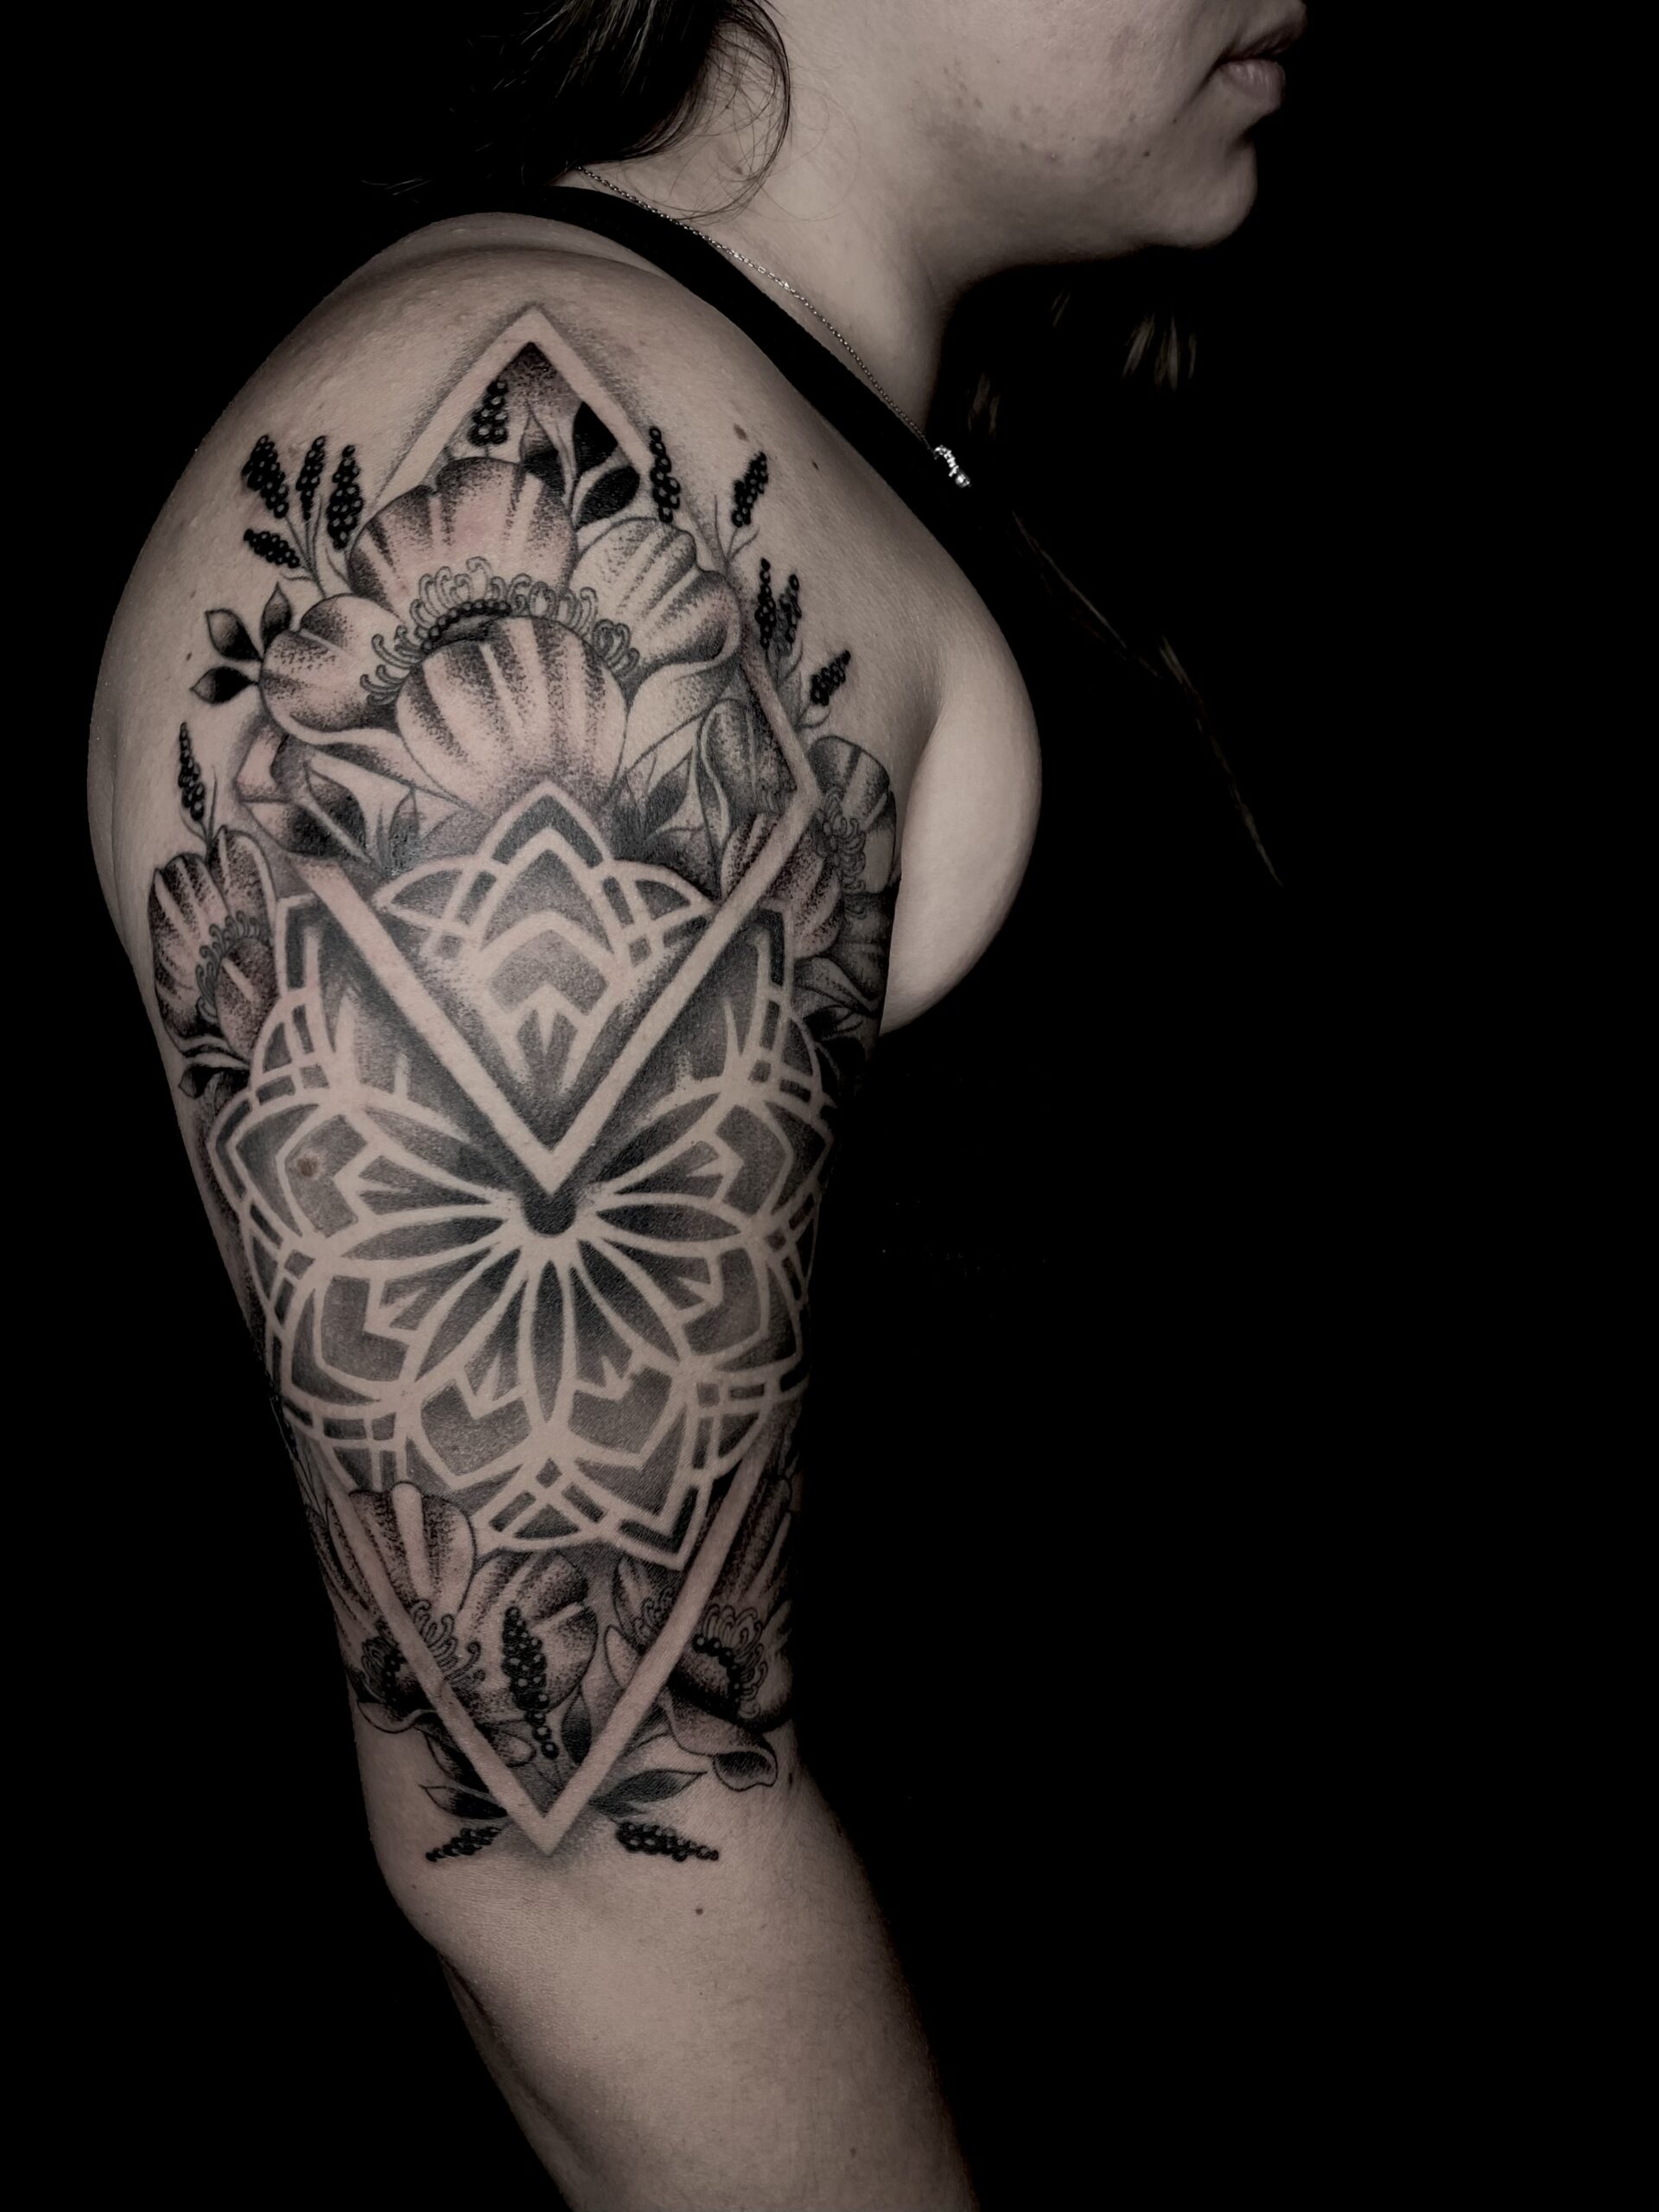 Blackwork Tattoo, Upper Arm Tattoo, Flower Tattoo, Sacred Geometry Tattoo | DH Tattooing - Livermore, California's Premier Tattoo Studio